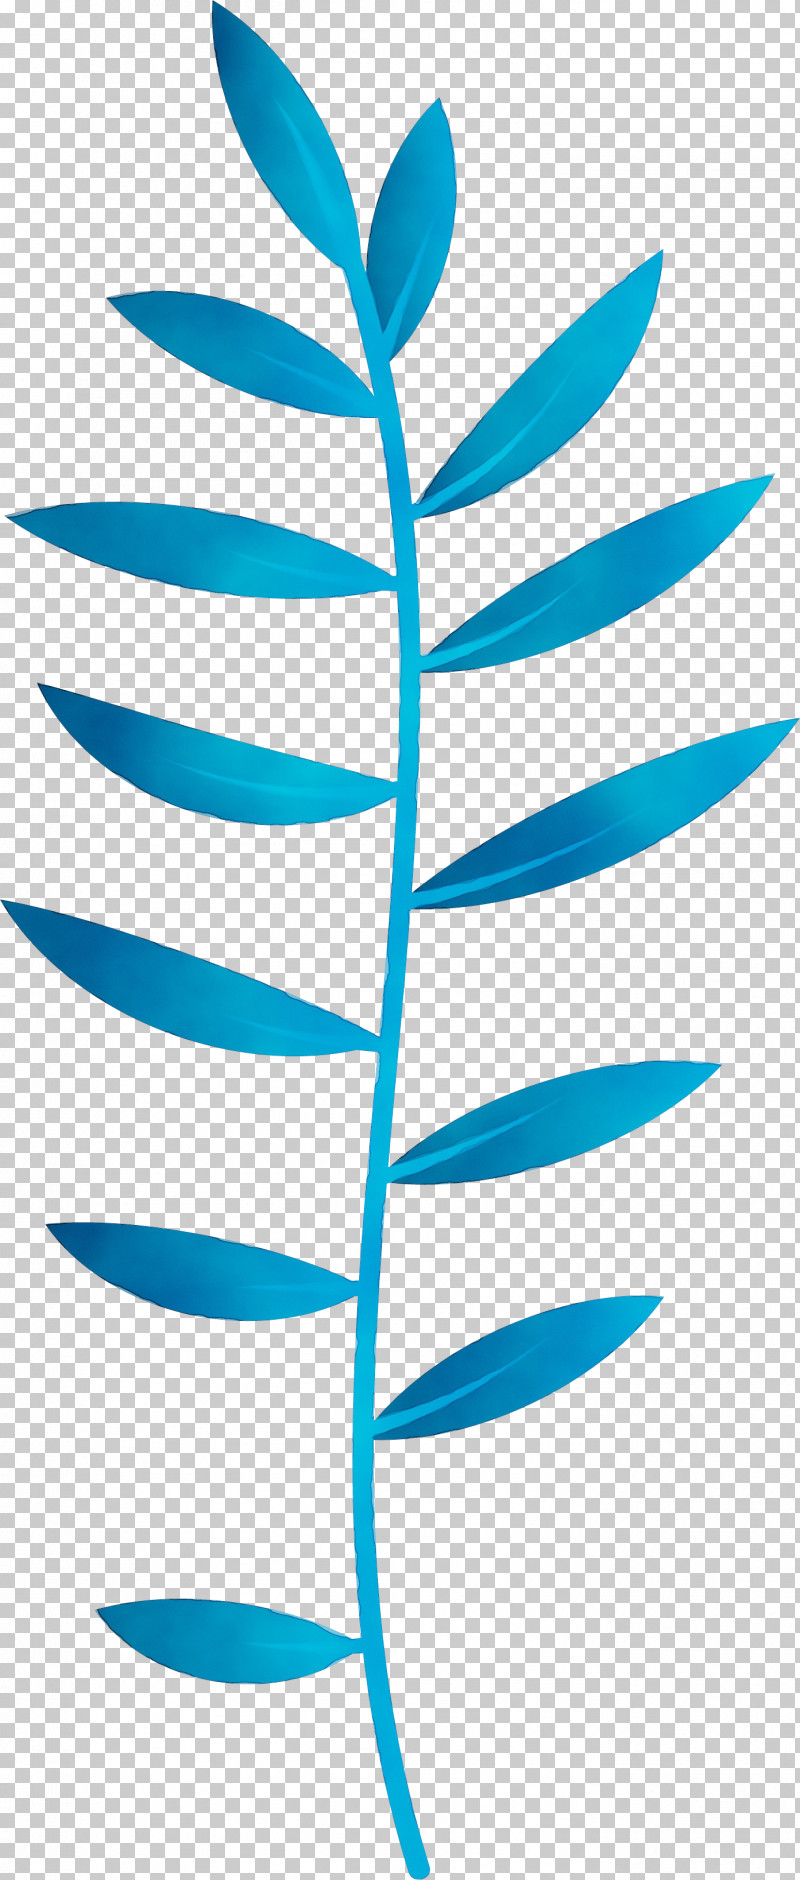 Plant Stem Leaf Angle Line Teal PNG, Clipart, Angle, Area, Biology, Leaf, Line Free PNG Download